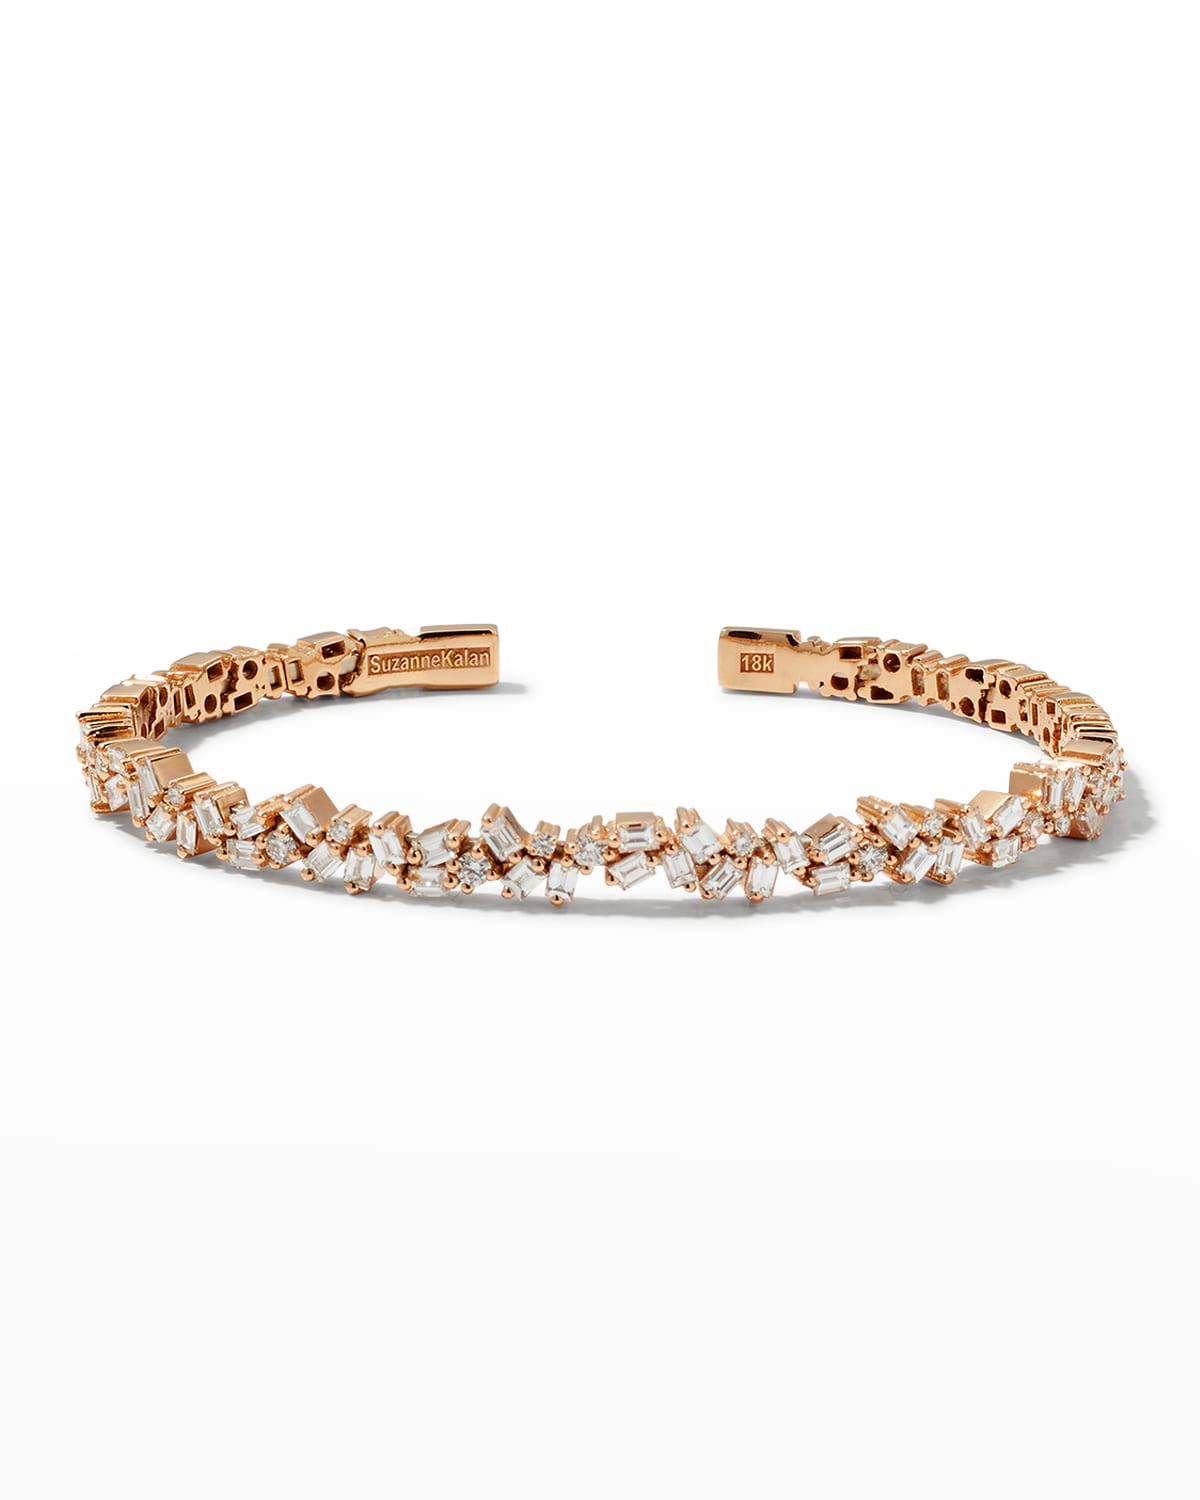 18K Rose Gold & Diamond Cuff Bracelet, Size M